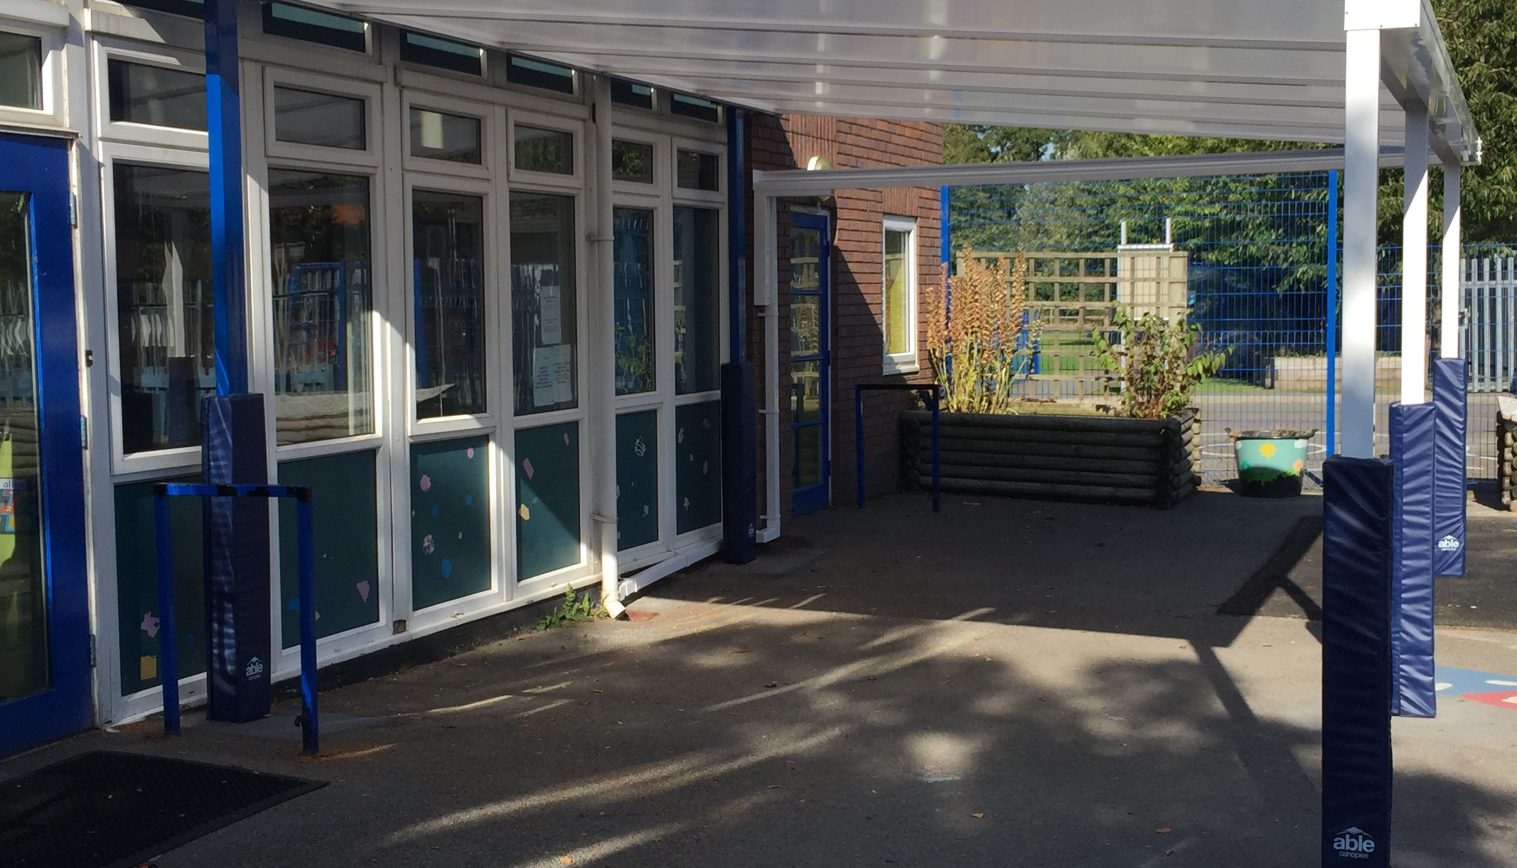 Ysgol Bodhyfryd County Primary School